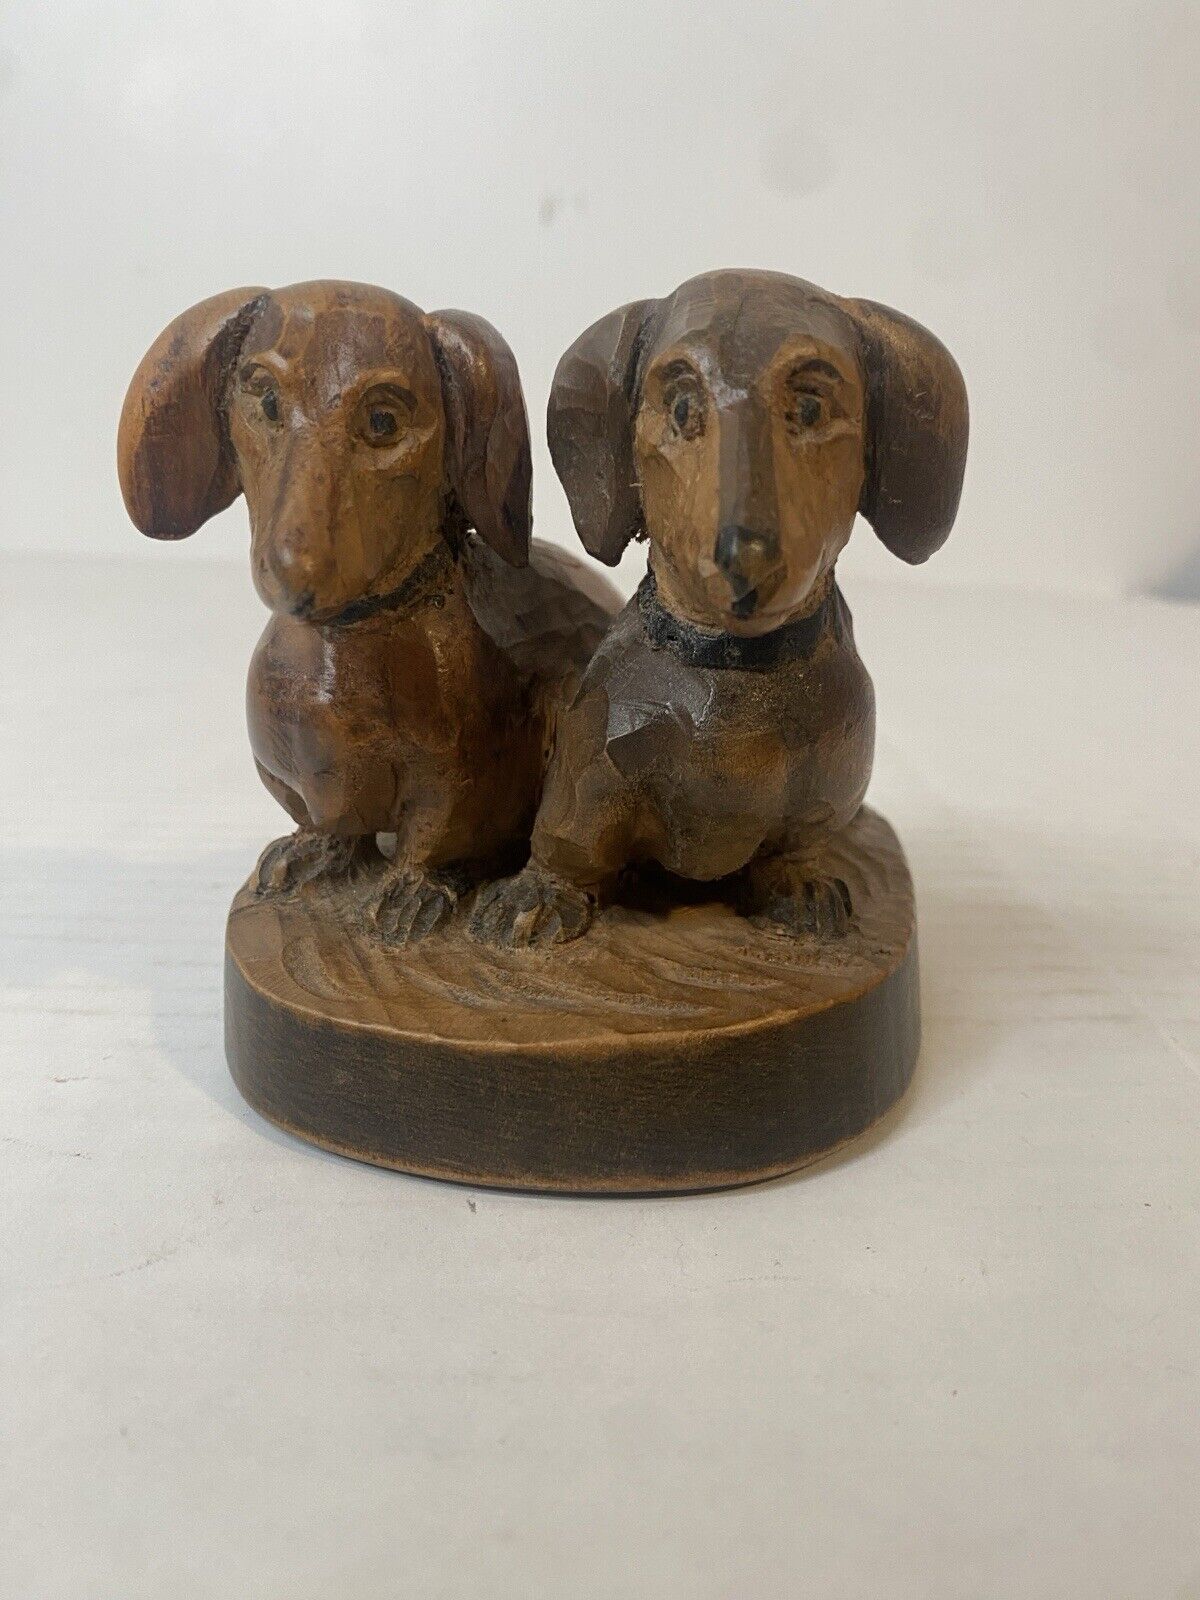 Vintage Wooden Hand Carved Dachshund Pair Figurine